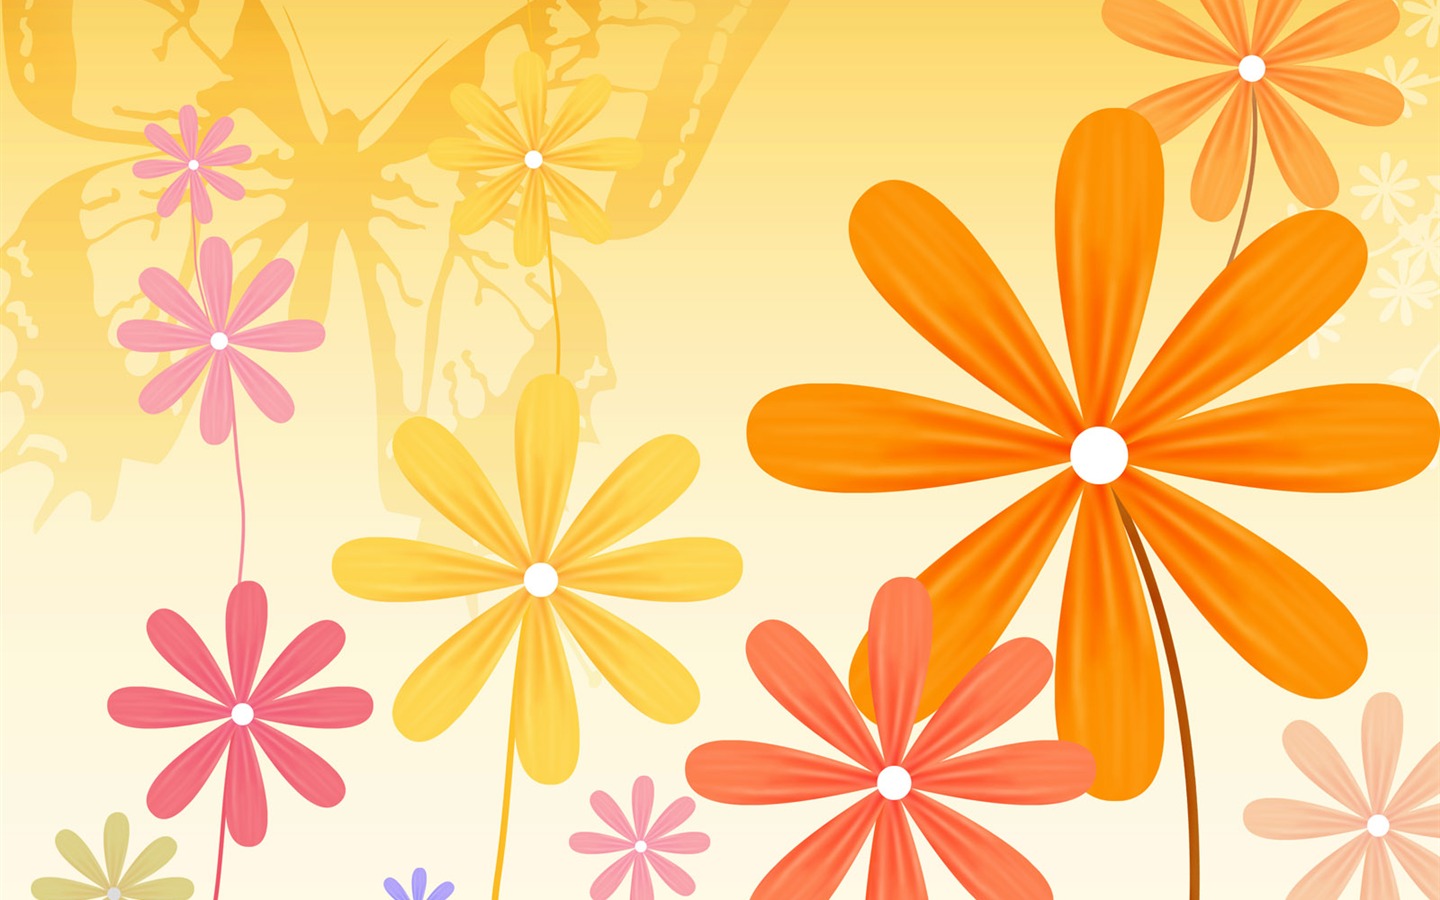 Floral wallpaper illustration design #17 - 1440x900